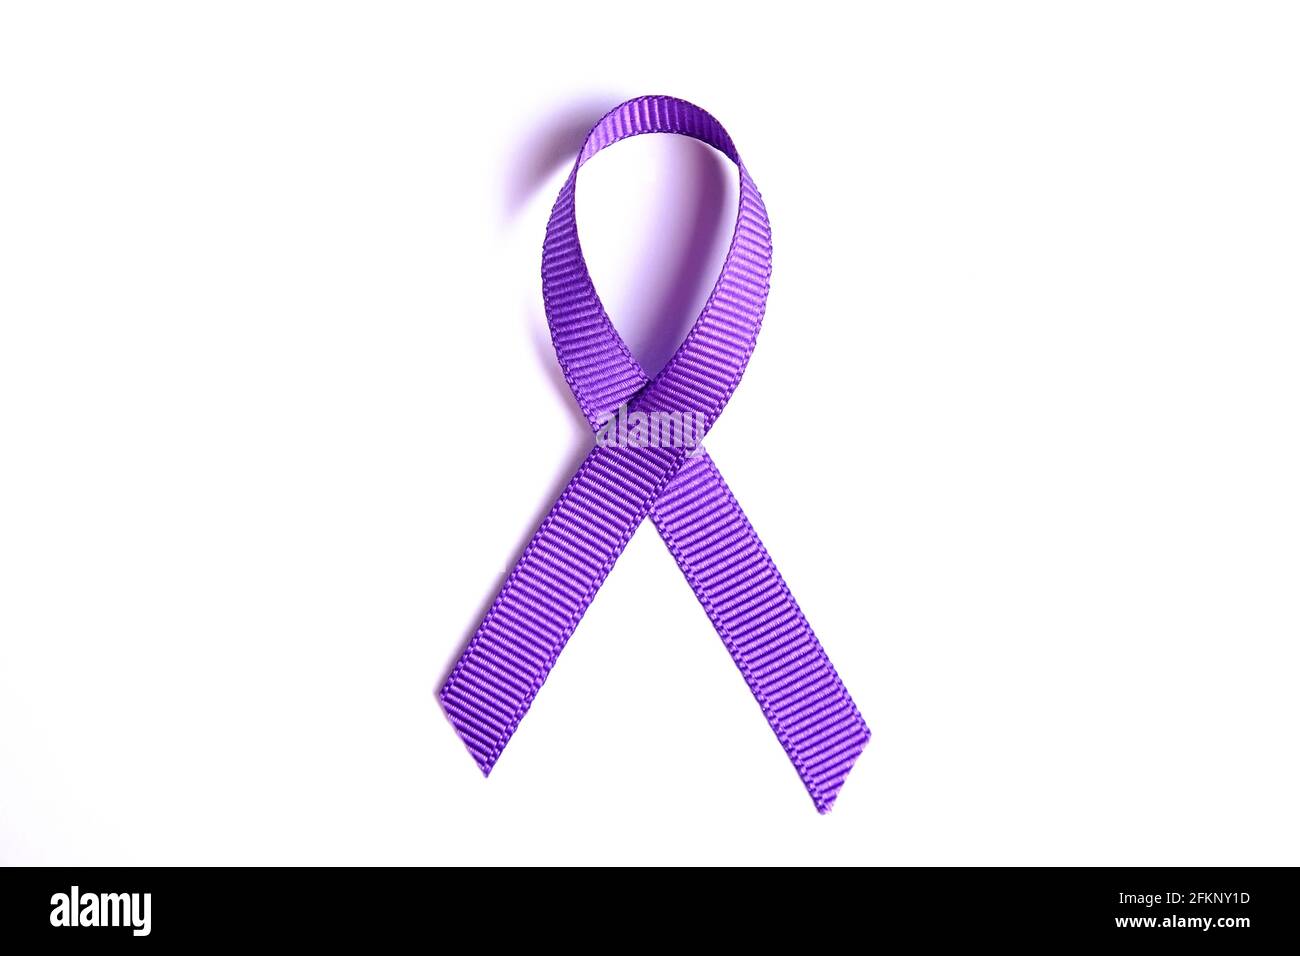 Purple Awareness Ribbon stellt Bauchspeicheldrüsenkrebs,  alzheimer-Krankheit, Lupus, Tiermissbrauch, ADD und religiöse Toleranz dar.  Isoliert auf weißem Backgro Stockfotografie - Alamy